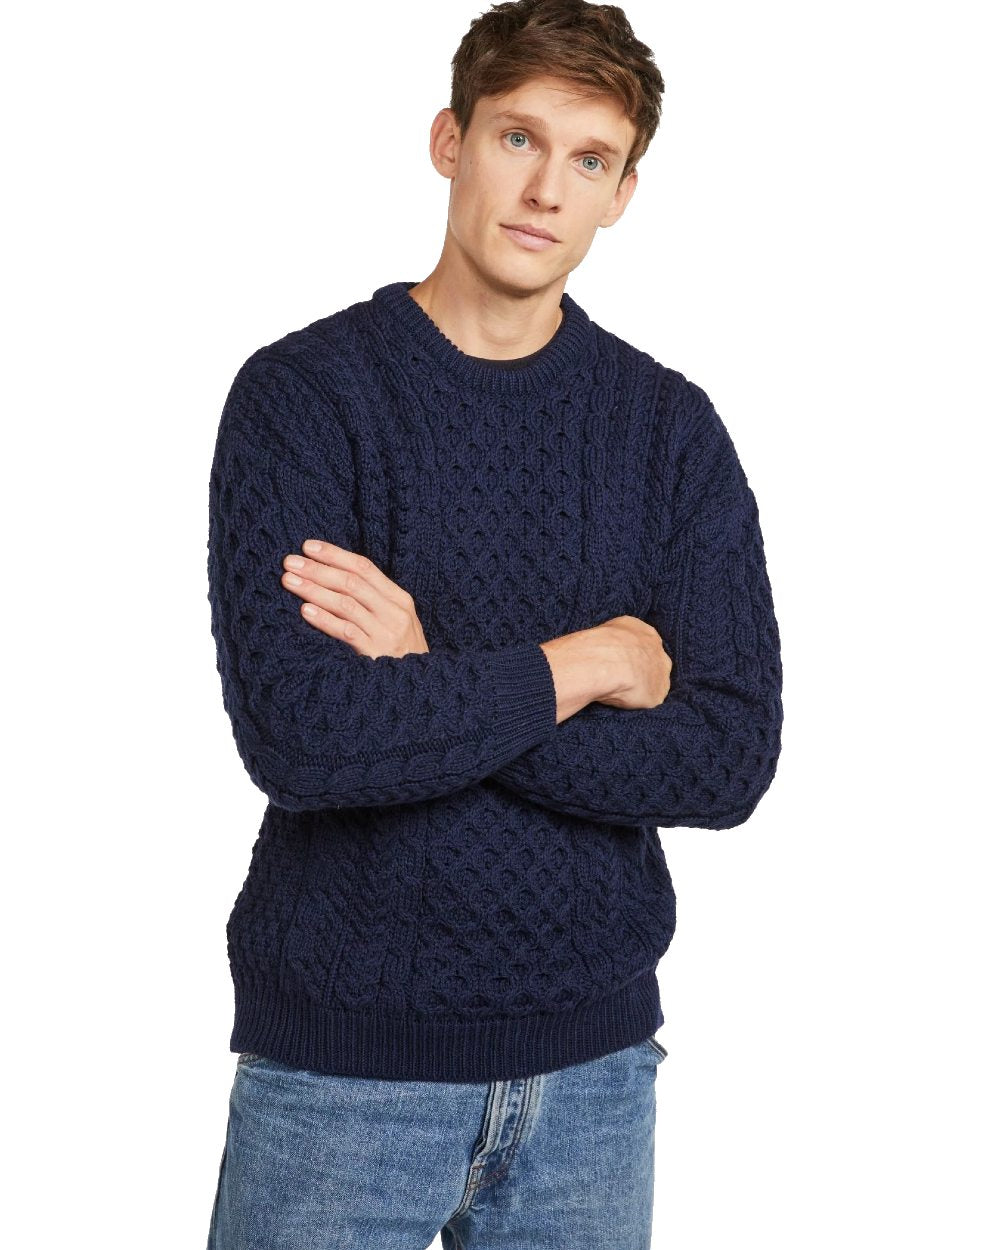 Men's Sweaters  Oak Hall, Inc.